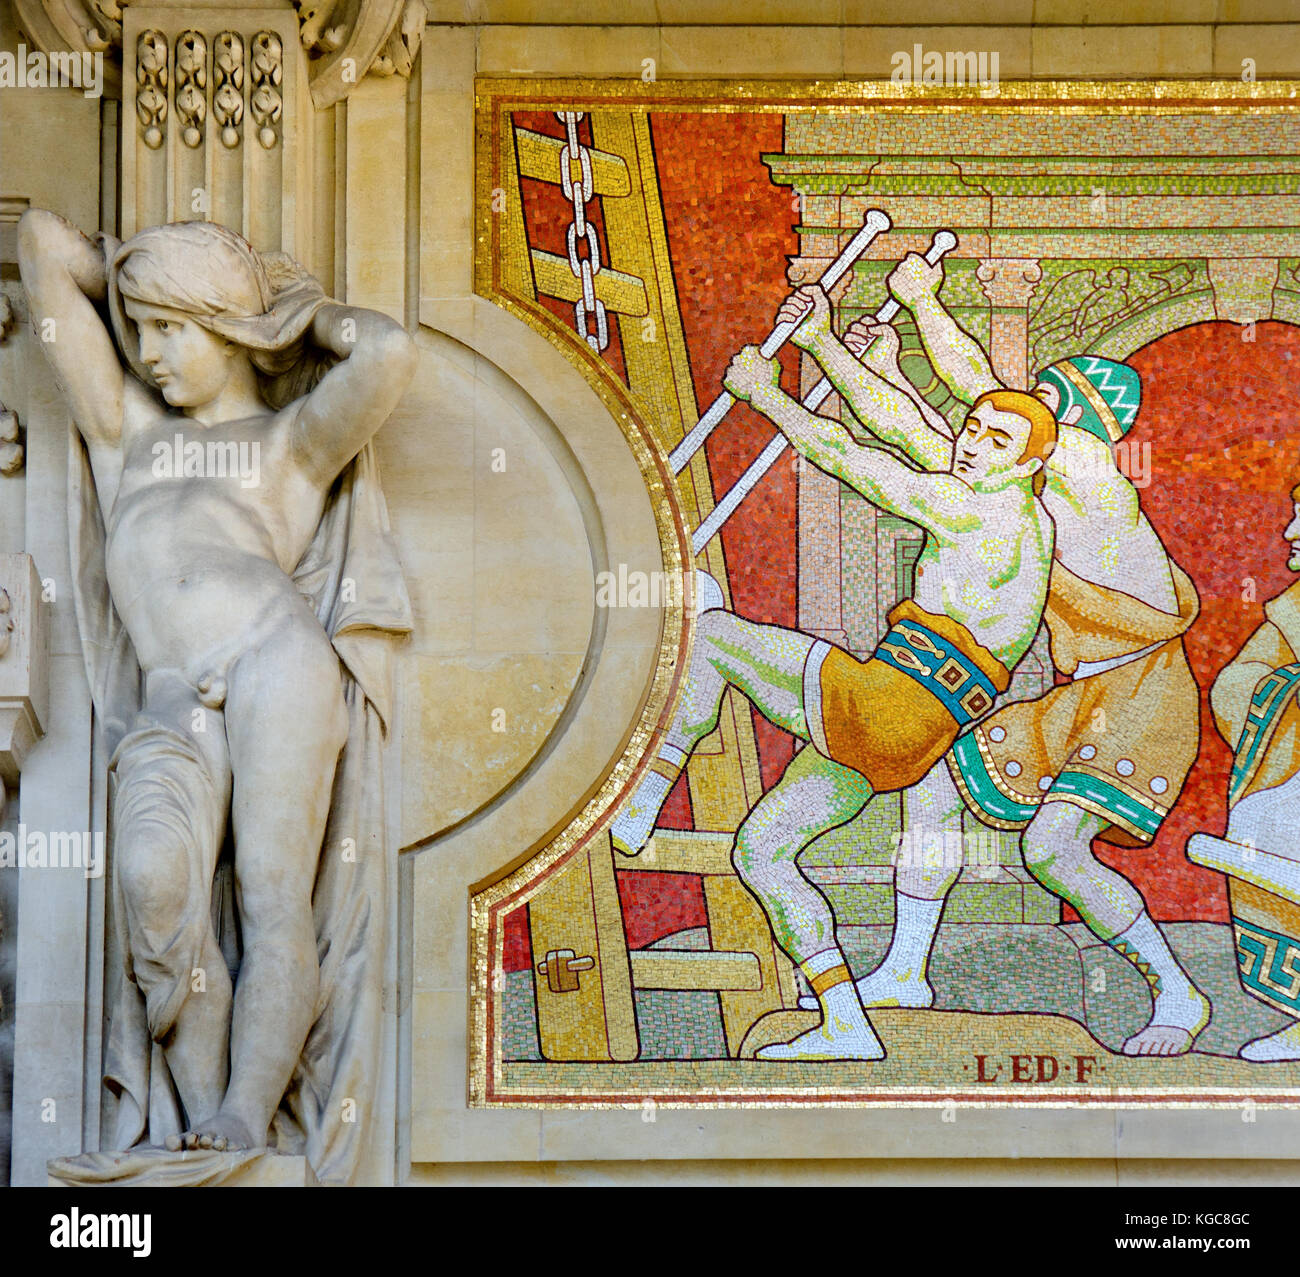 Parigi, Francia. Il Grand Palais (..des Champs-Élysées): fregio a mosaico sulla facciata (basato su disegni di Louis Édouard Fournier) che illustra la storia di Foto Stock